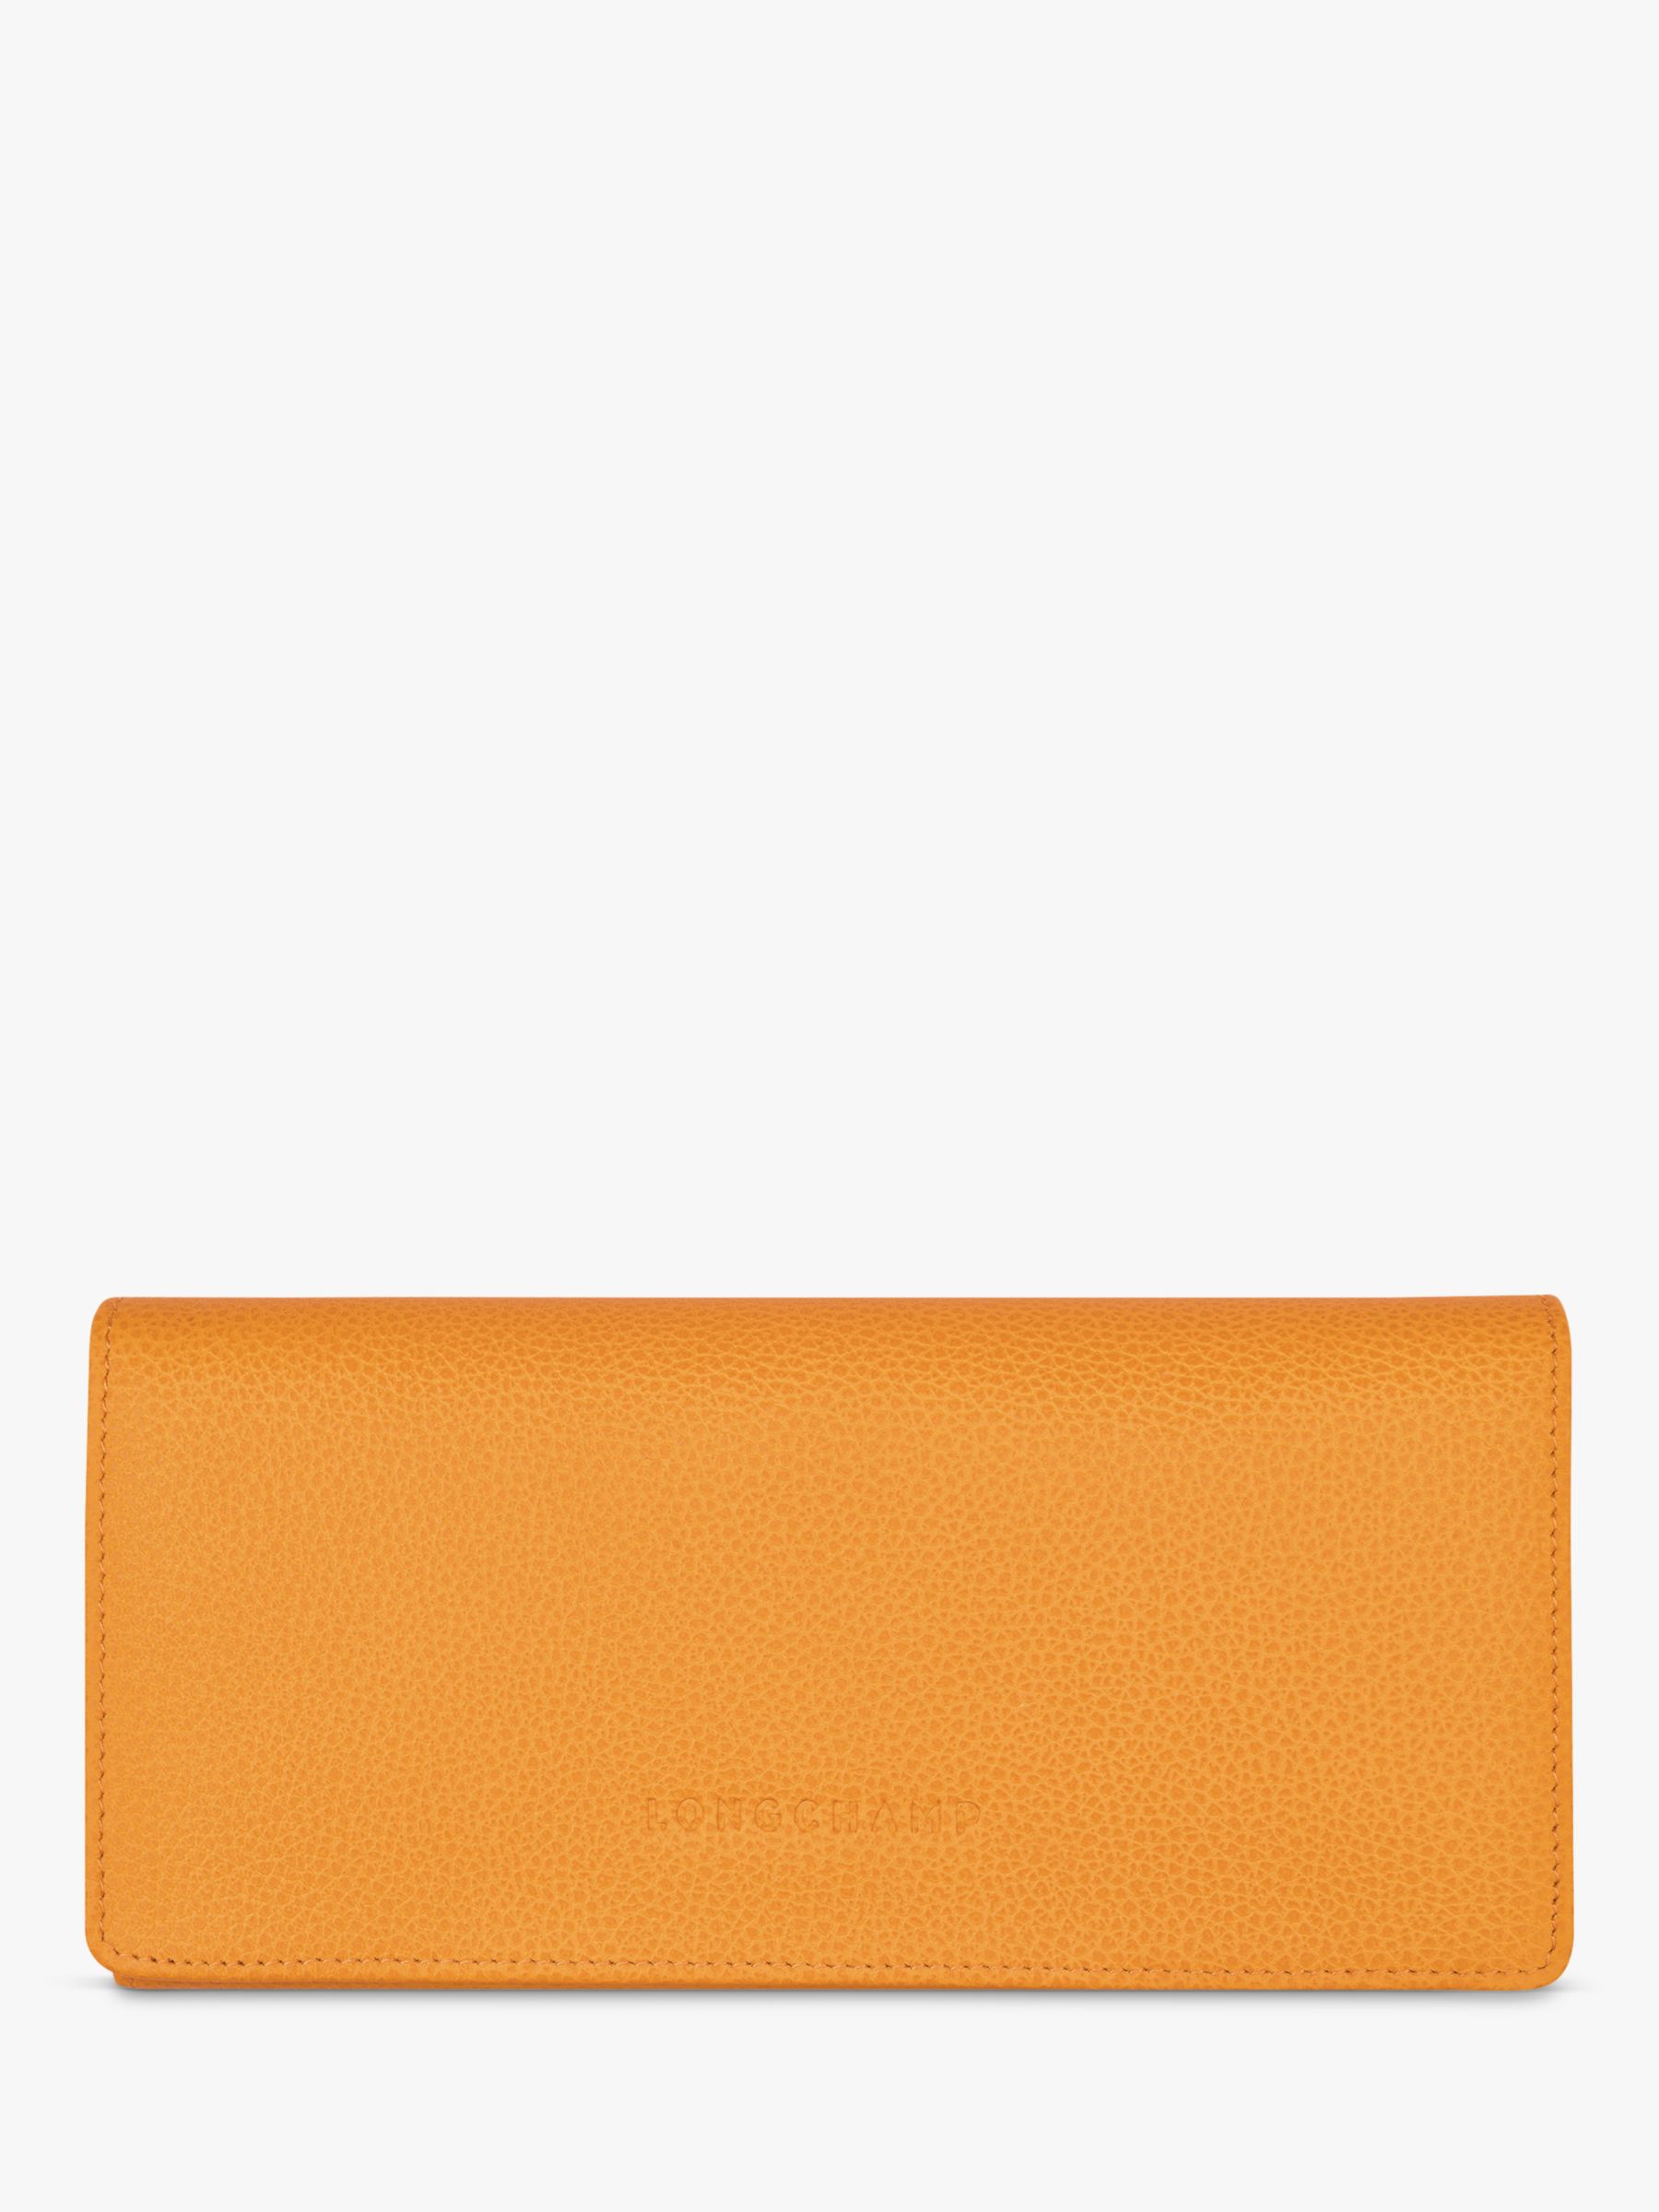 Longchamp Le Foulonné Continental Leather Wallet, Apricot